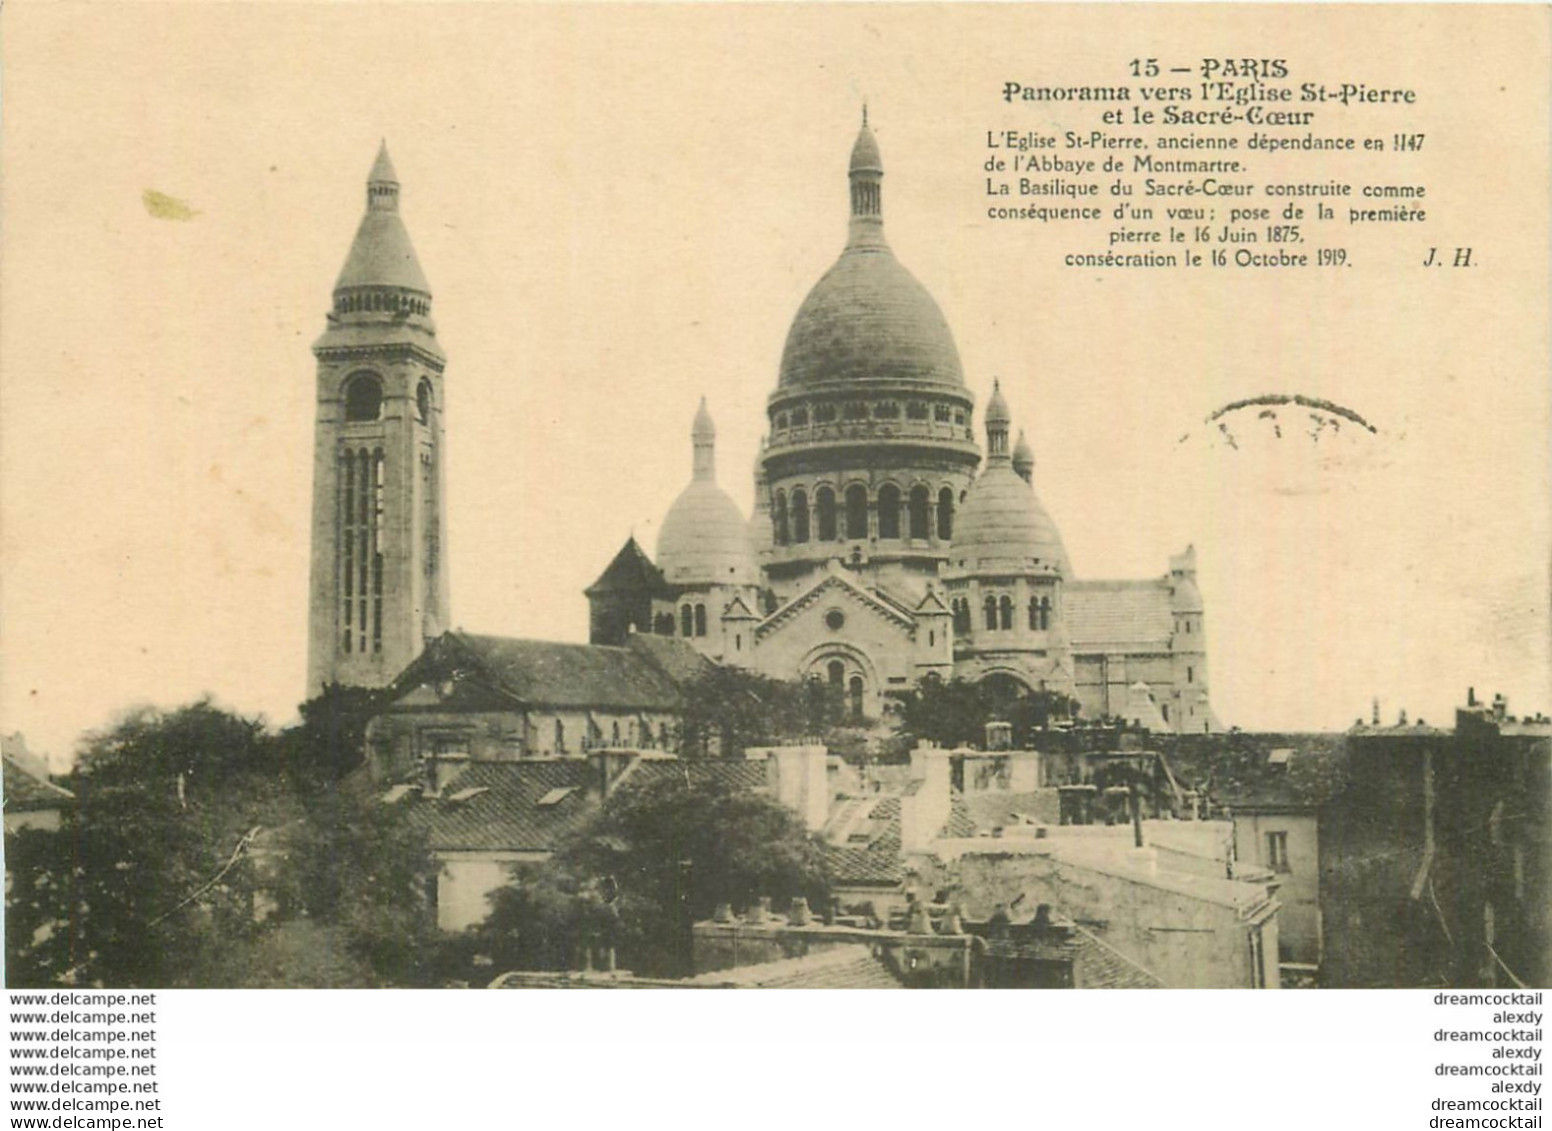 Lot de 5 cartes postales sur PARIS